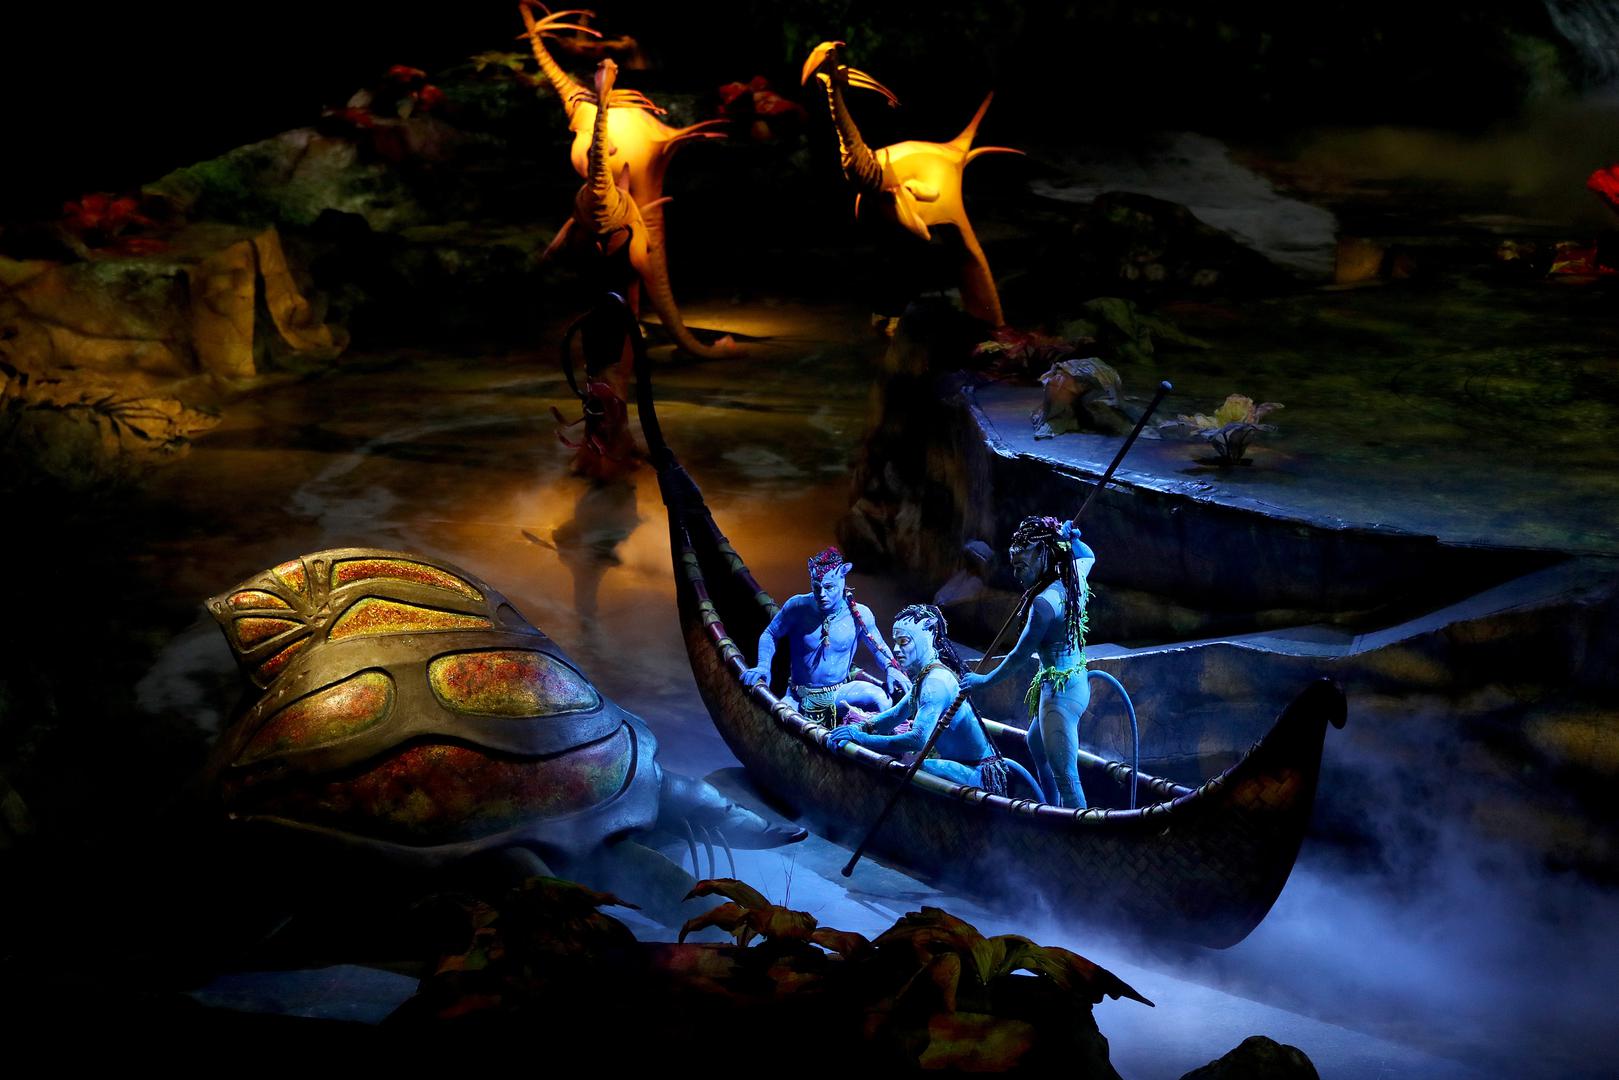 Cirque du Soleil pet se godina pripremao za ovu produkciju, a gotovo je četiri godine na turneji – nakon nastupa u Sjevernoj Americi, Aziji, Australiji i Novom Zelandu, Zagreb je osamdeset i četvrti grad na europskoj turneji ovih umjetnika.